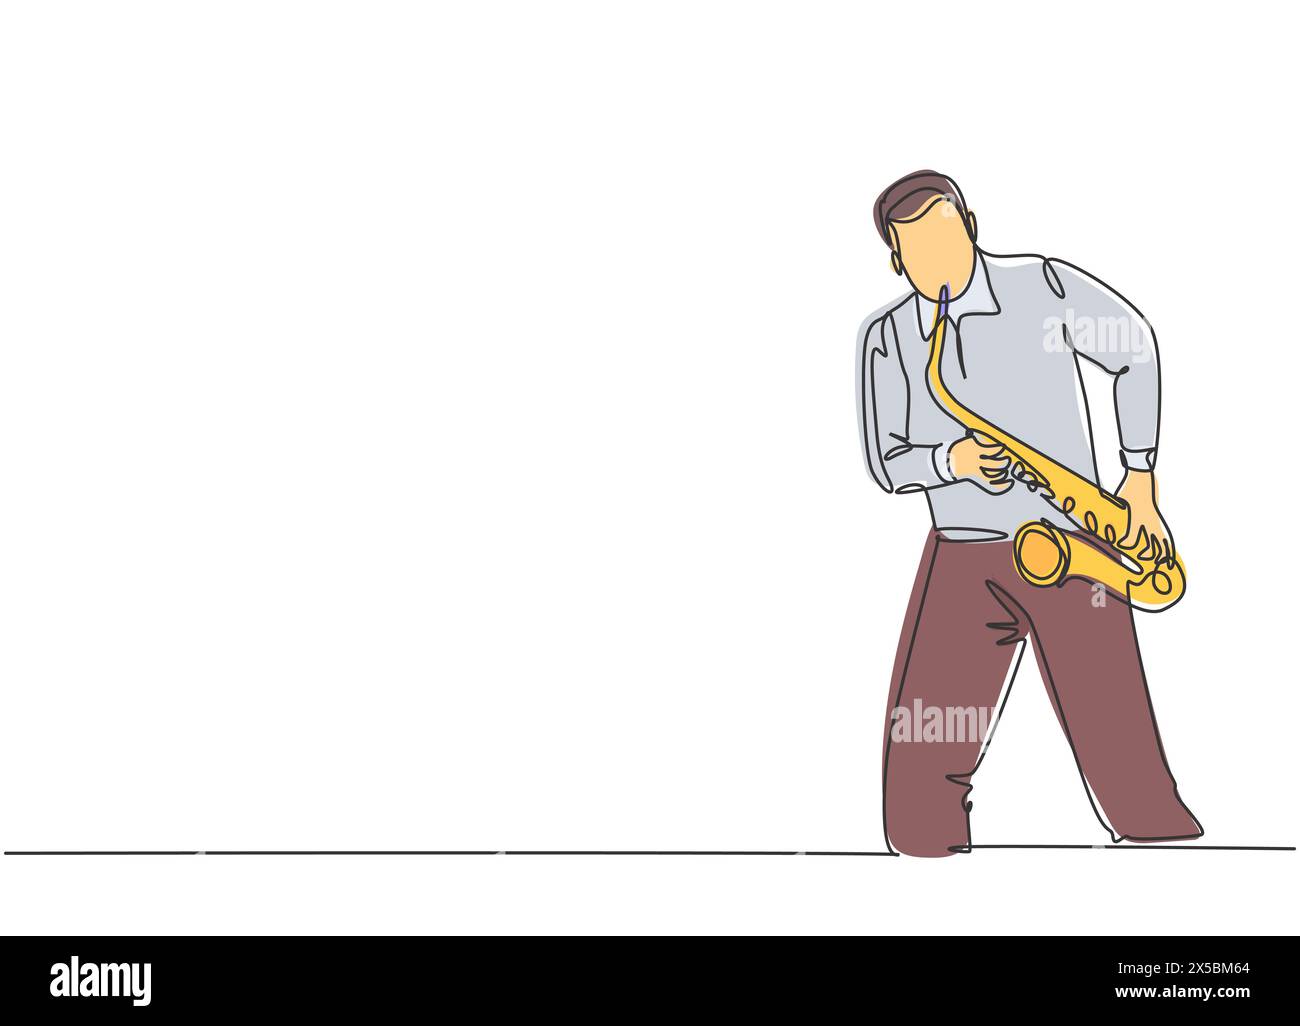 Un dessin en ligne continue d'un jeune saxophoniste masculin heureux jouant du saxophone lors d'un concert de musique. Musicien artiste concept de performance unique Illustration de Vecteur